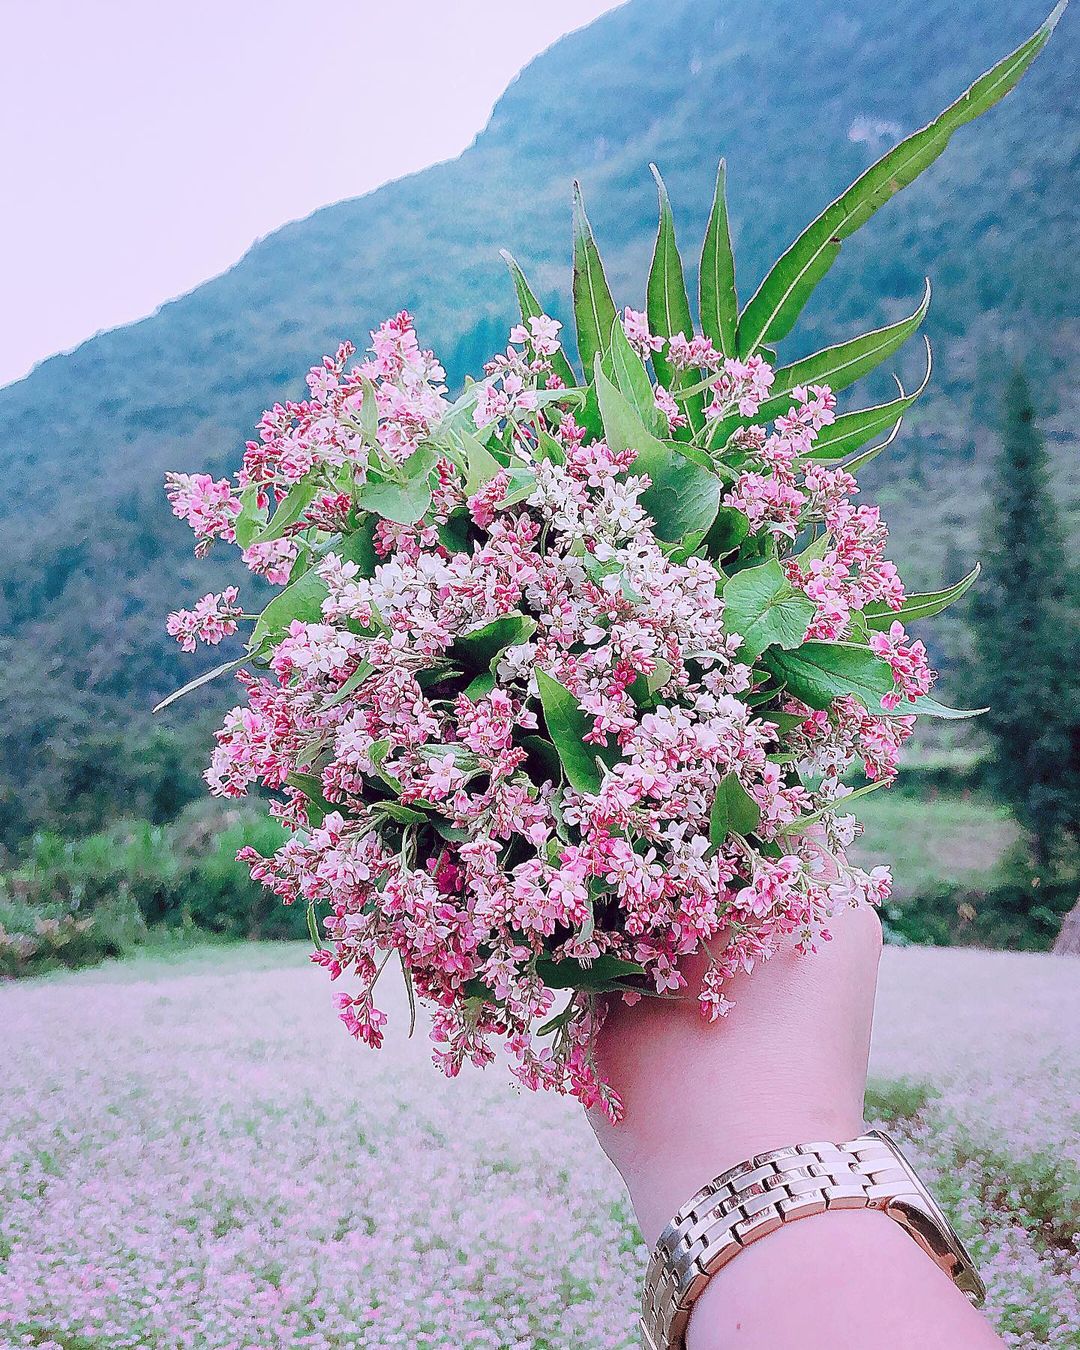 Du lịch Hà Giang mùa hoa tam giác mạch